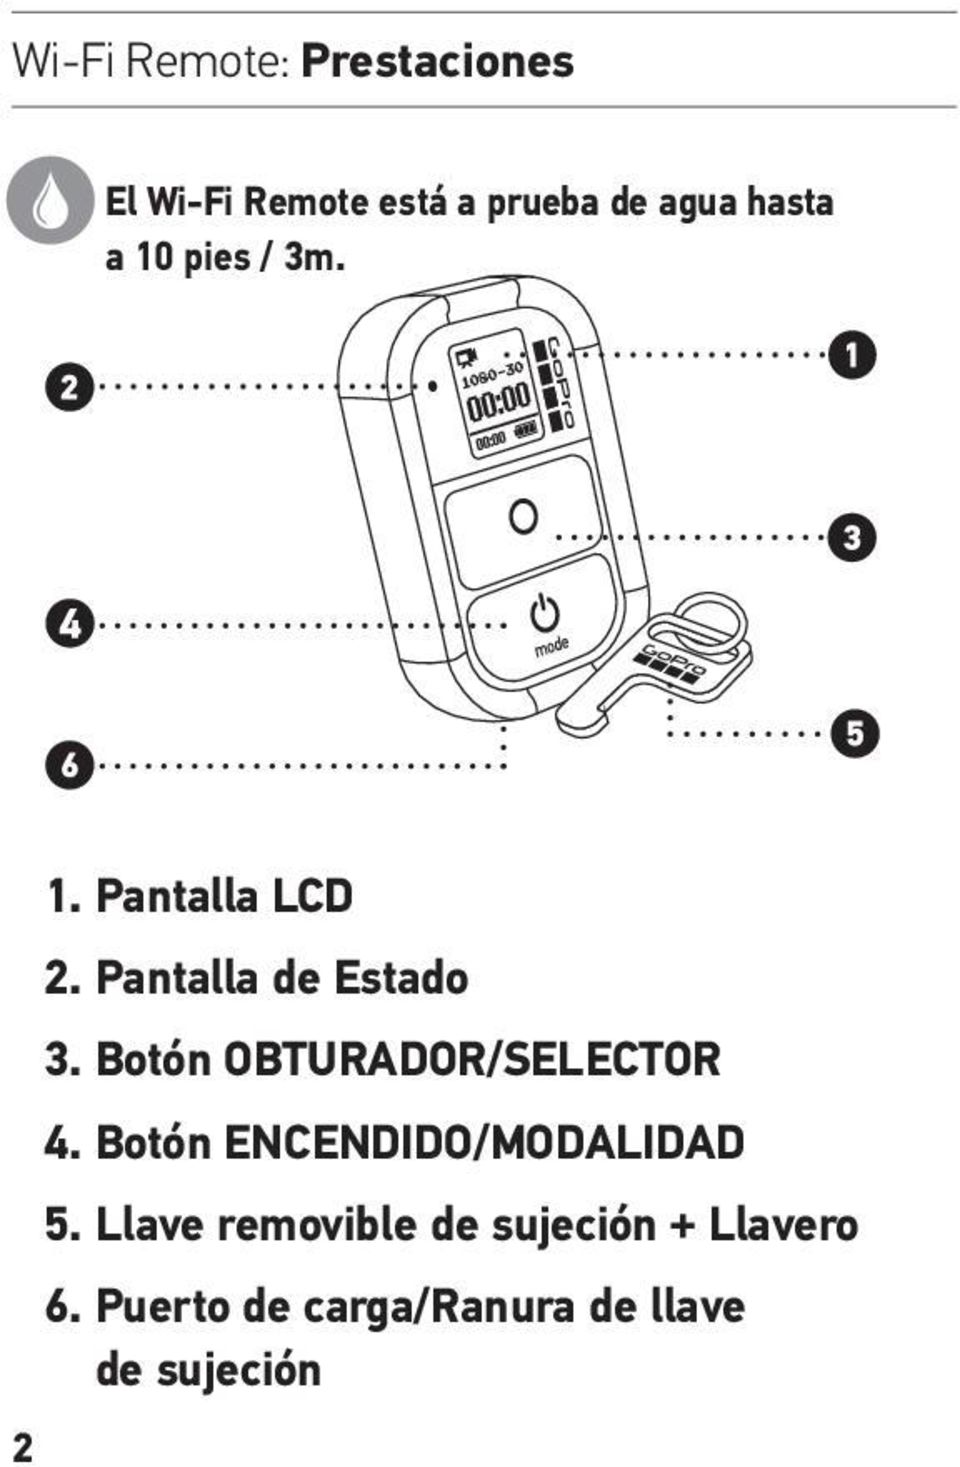 Botón OBTURADOR/SELECTOR 4. Botón ENCENDIDO/MODALIDAD 5.